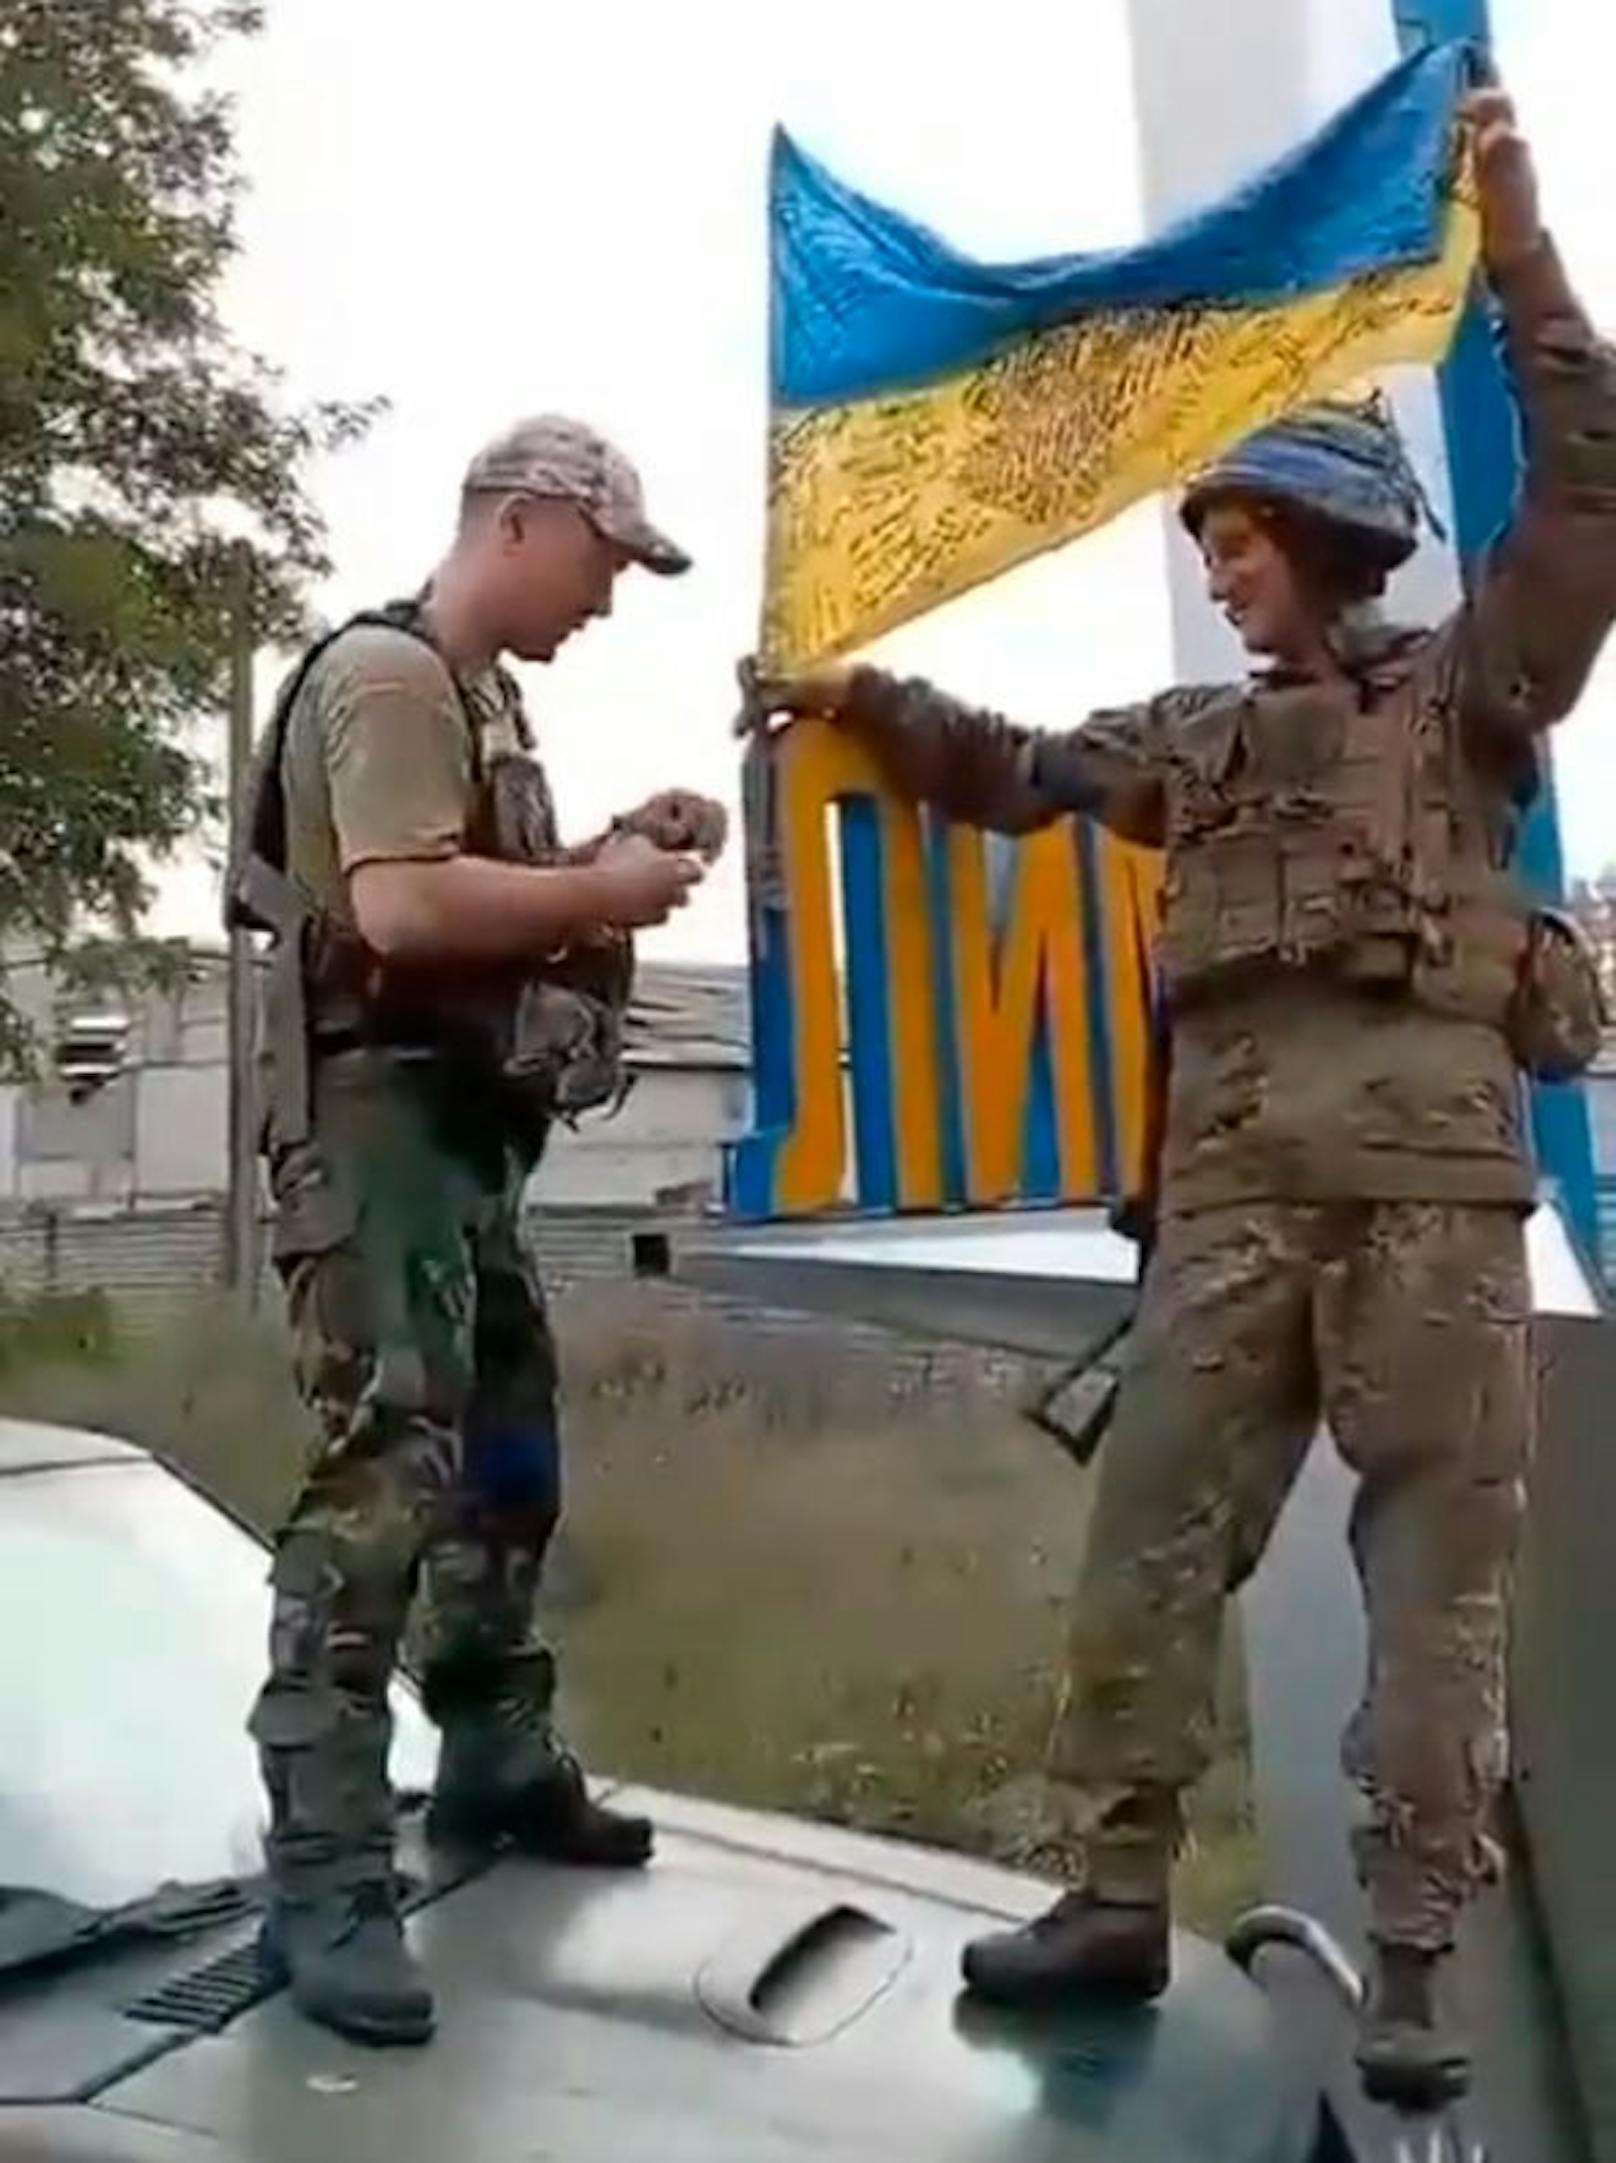 Die ukrainische Armee hat im Rahmen ihrer Gegenoffensive am 1. Oktober 2022 die Donbas-Stadt Lyman befreit.&nbsp;<a target="_blank" href="https://www.heute.at/g/putins-armee-droht-im-donbas-massive-niederlage-100230756">Mehr dazu hier &gt;&gt;</a>